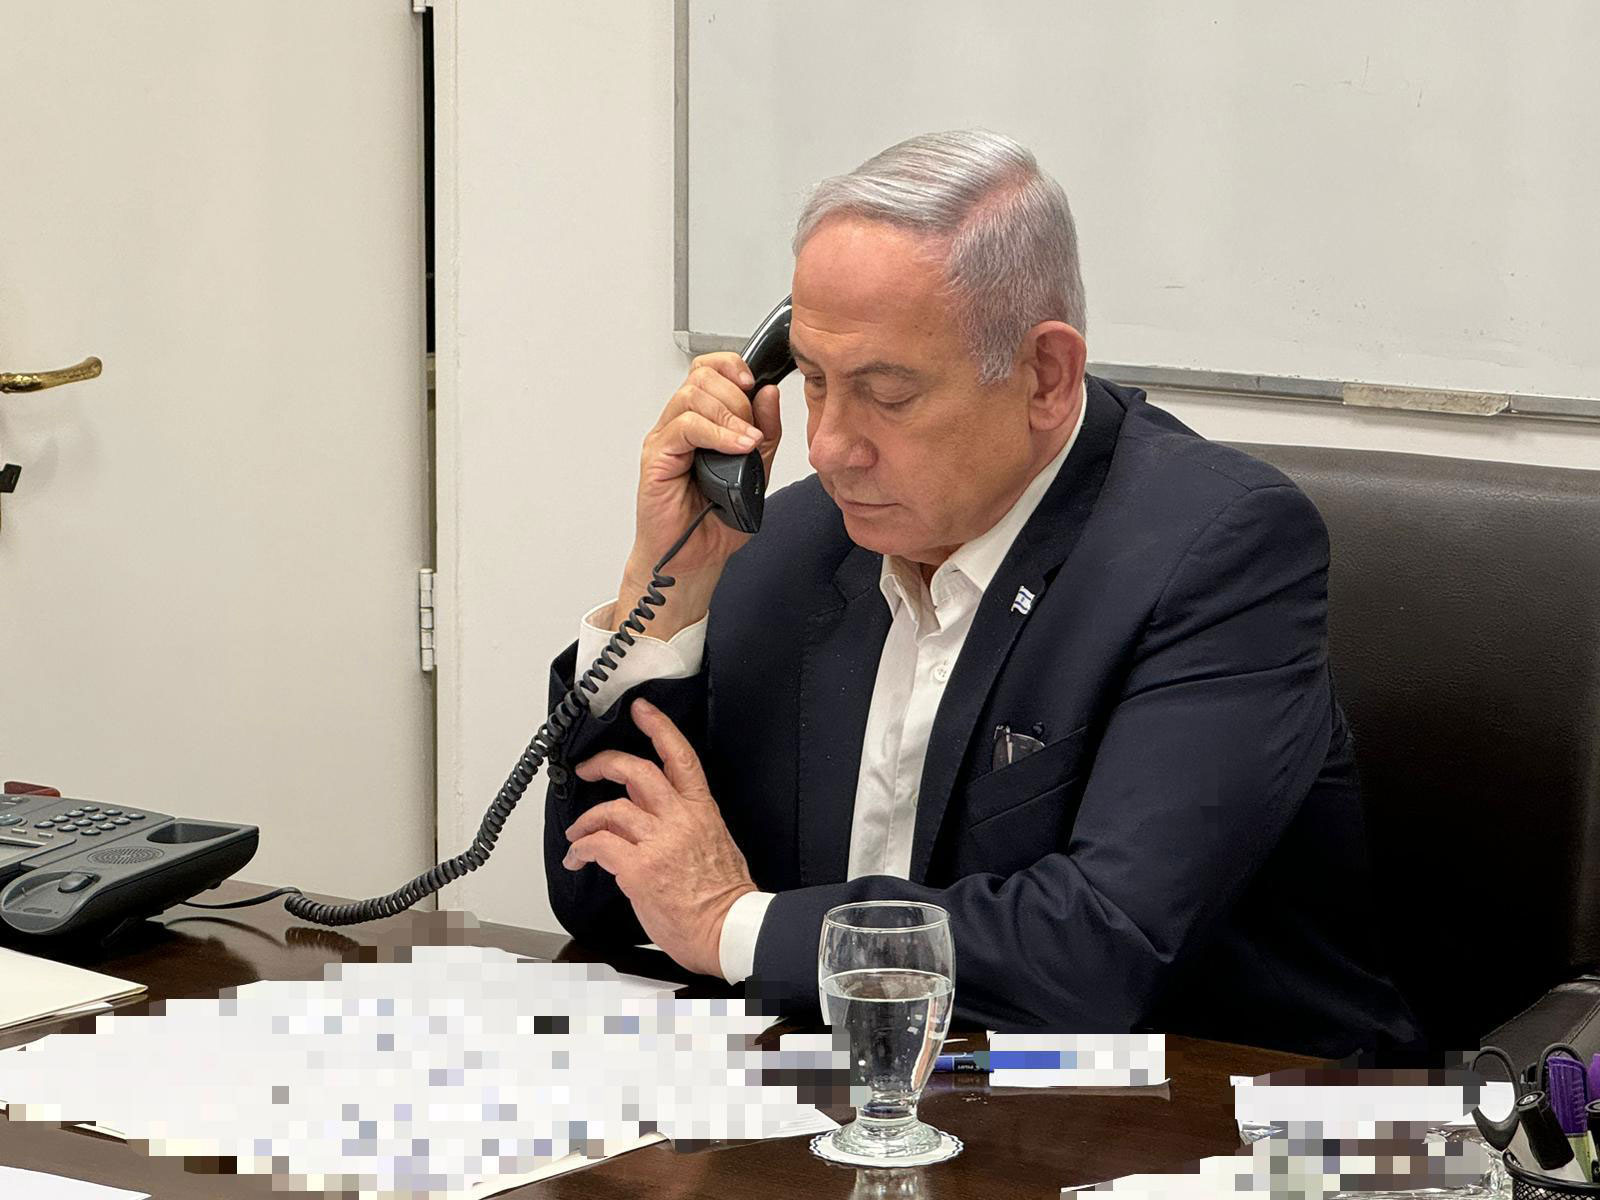 Hé lộ phản ứng bất ngờ của ông Biden trong cuộc điện đàm với Thủ tướng Israel sau đòn tấn công của Iran - Ảnh 1.